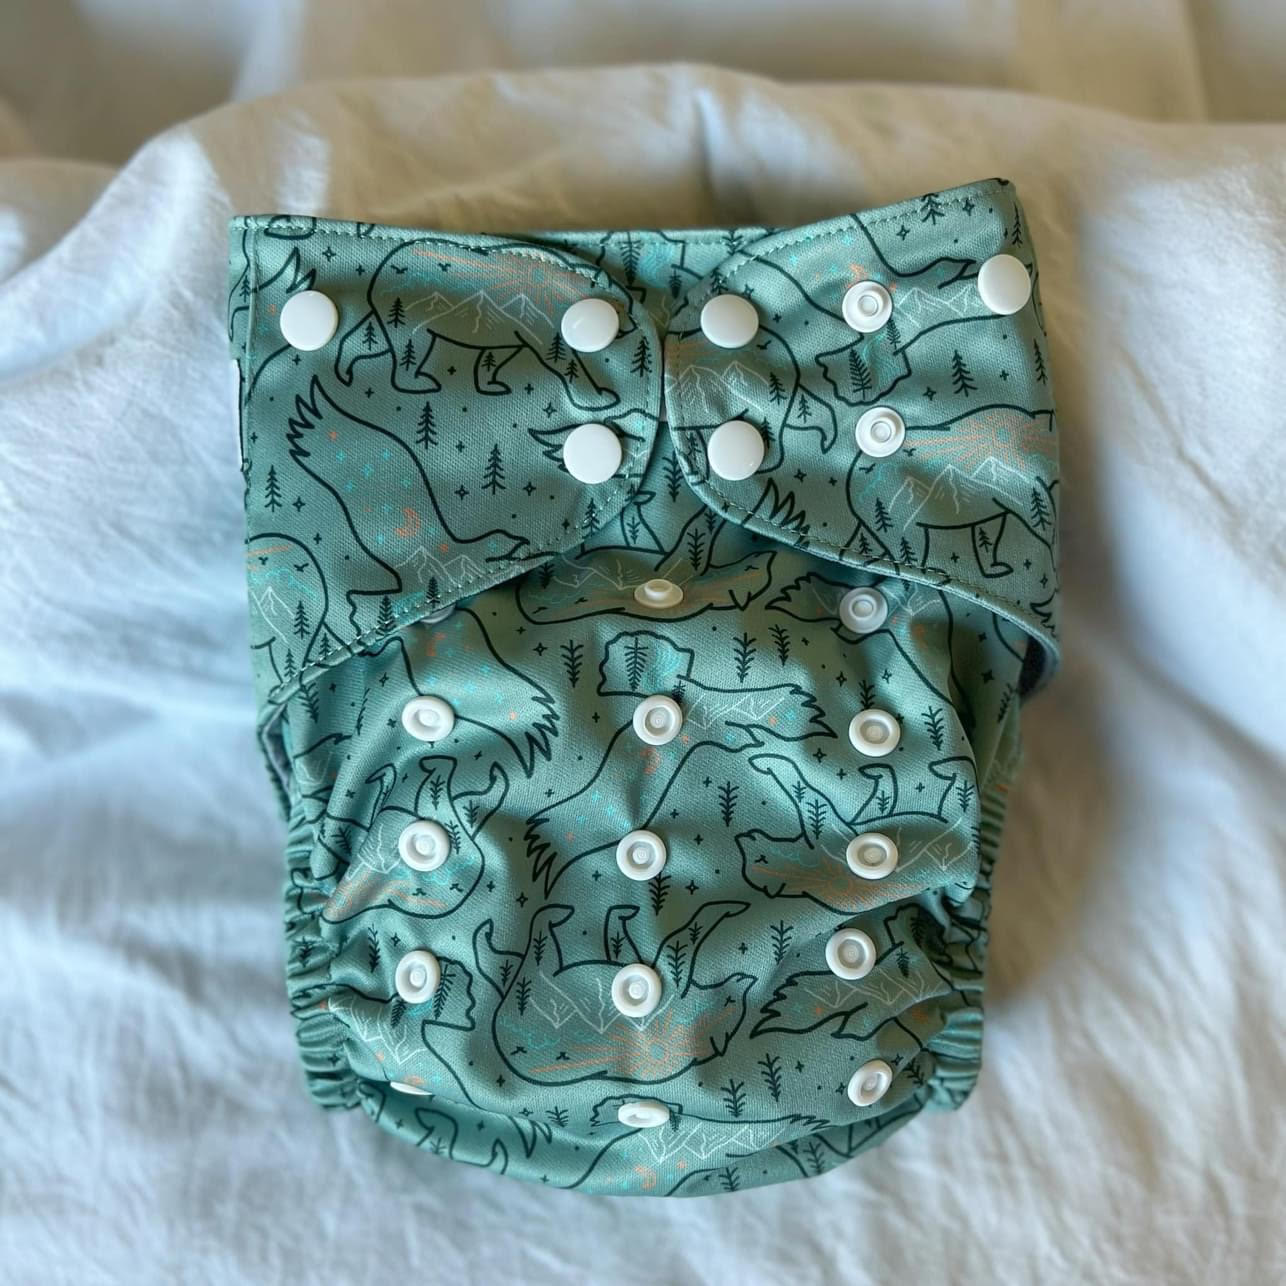 Outer Cloth Diaper Cover / Swim Diaper, Snuggle Bugz